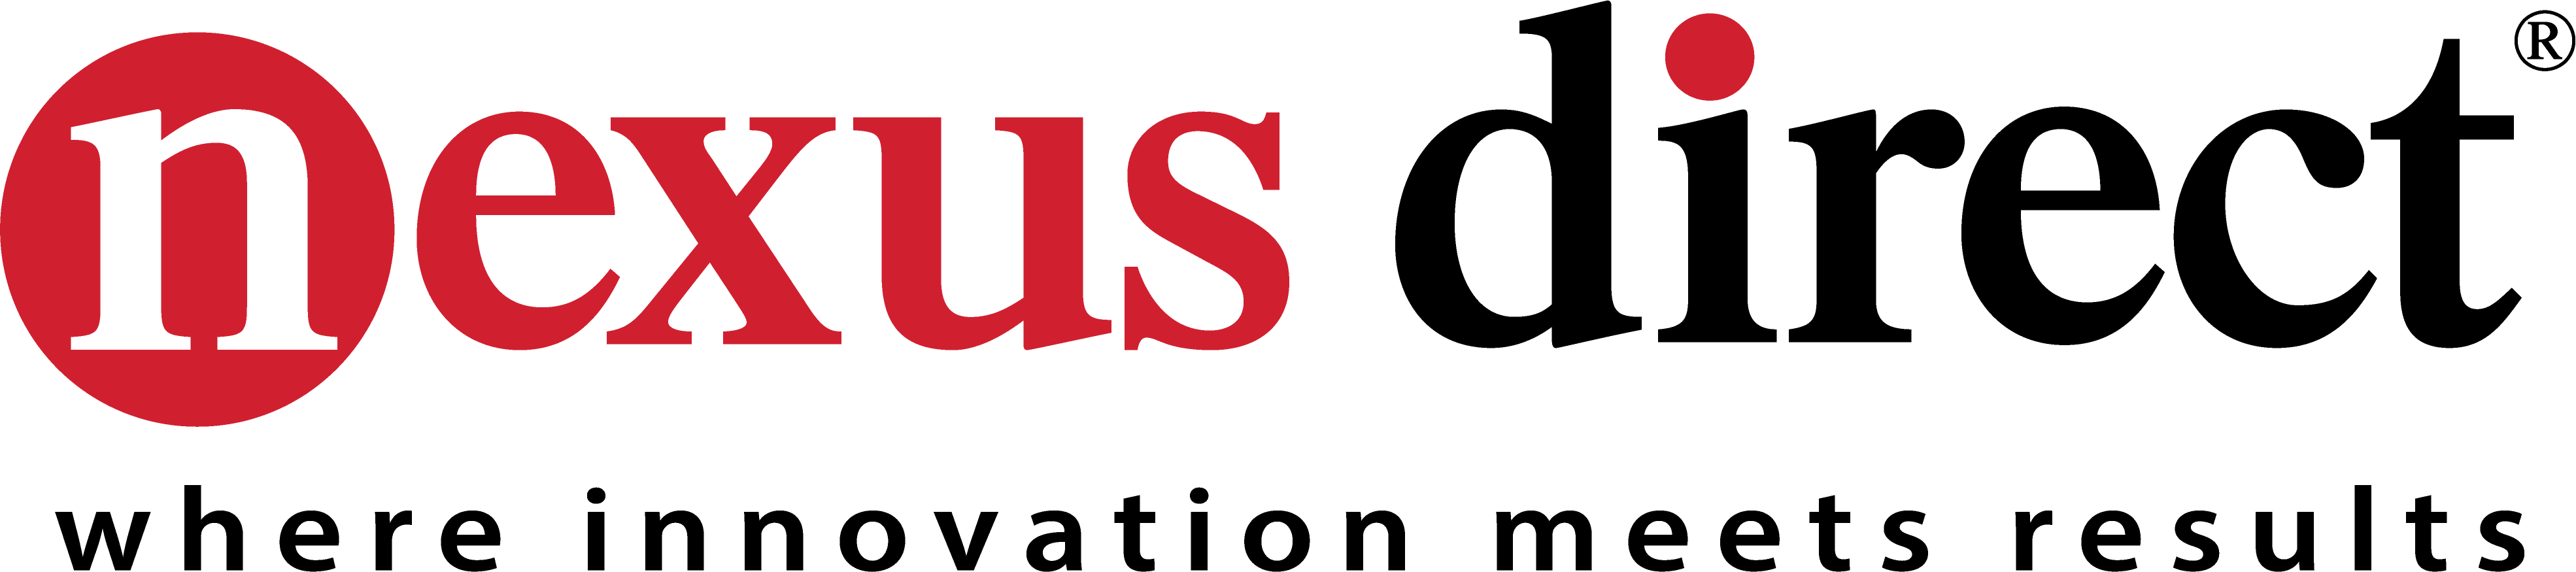 Nexus Direct Logo.png